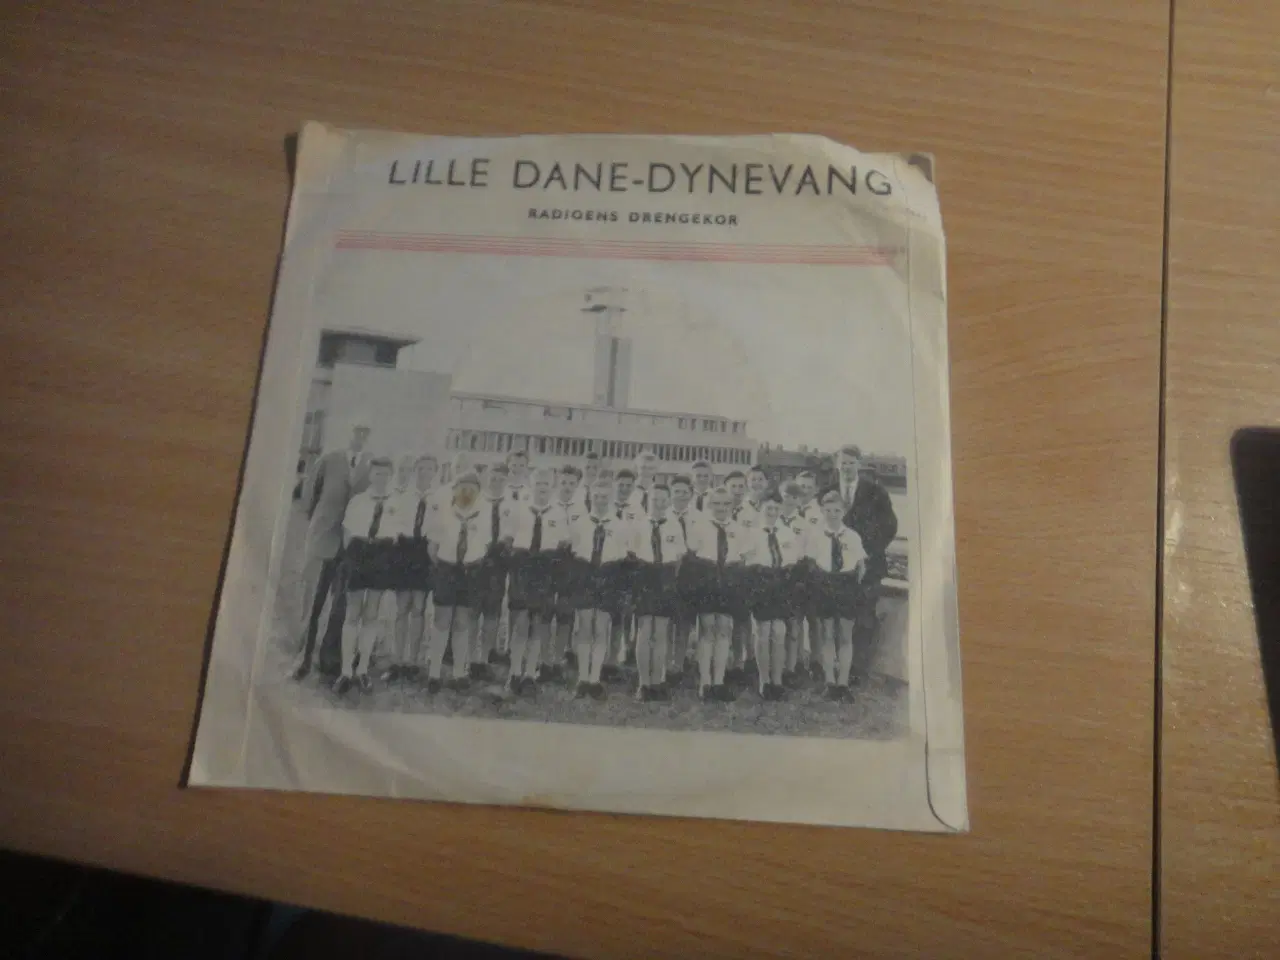 Billede 1 - Single: Radioens Drengekor - Lille Dane-Dynevang 